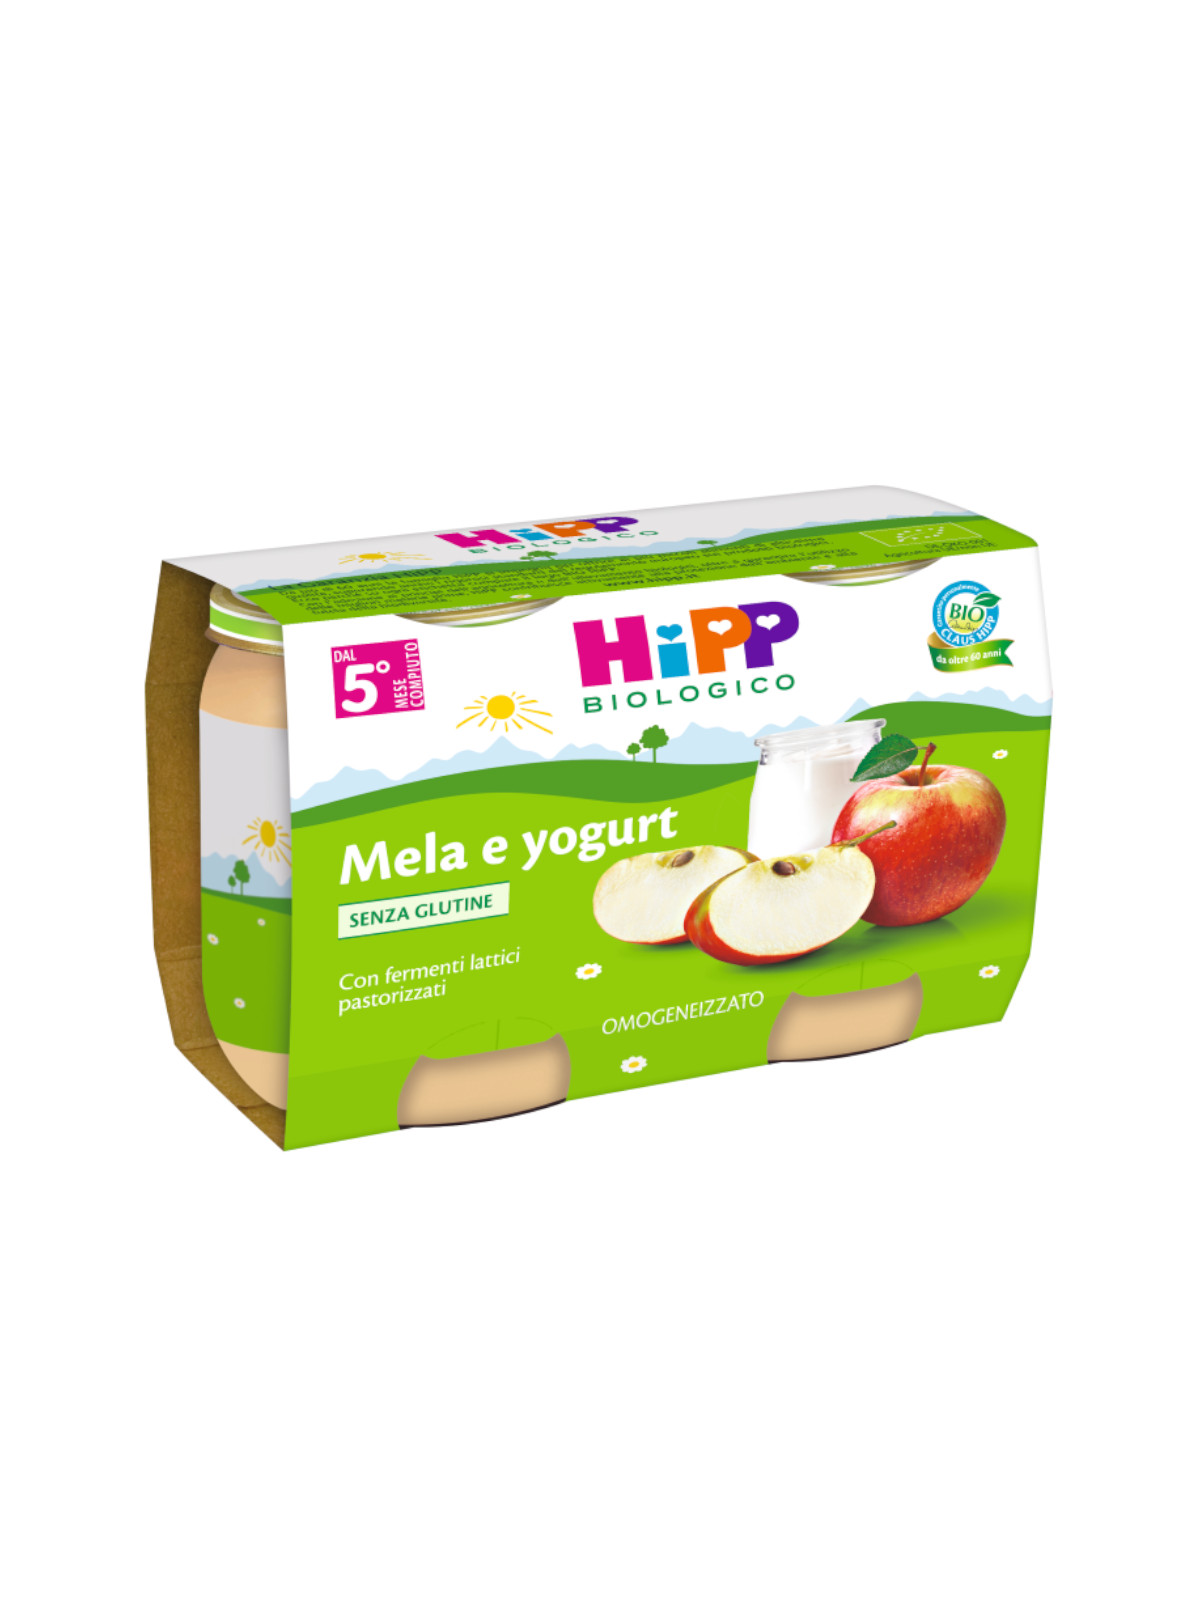 Hipp - Omogeneizzato Mela e yogurt 2x125g - Bimbostore